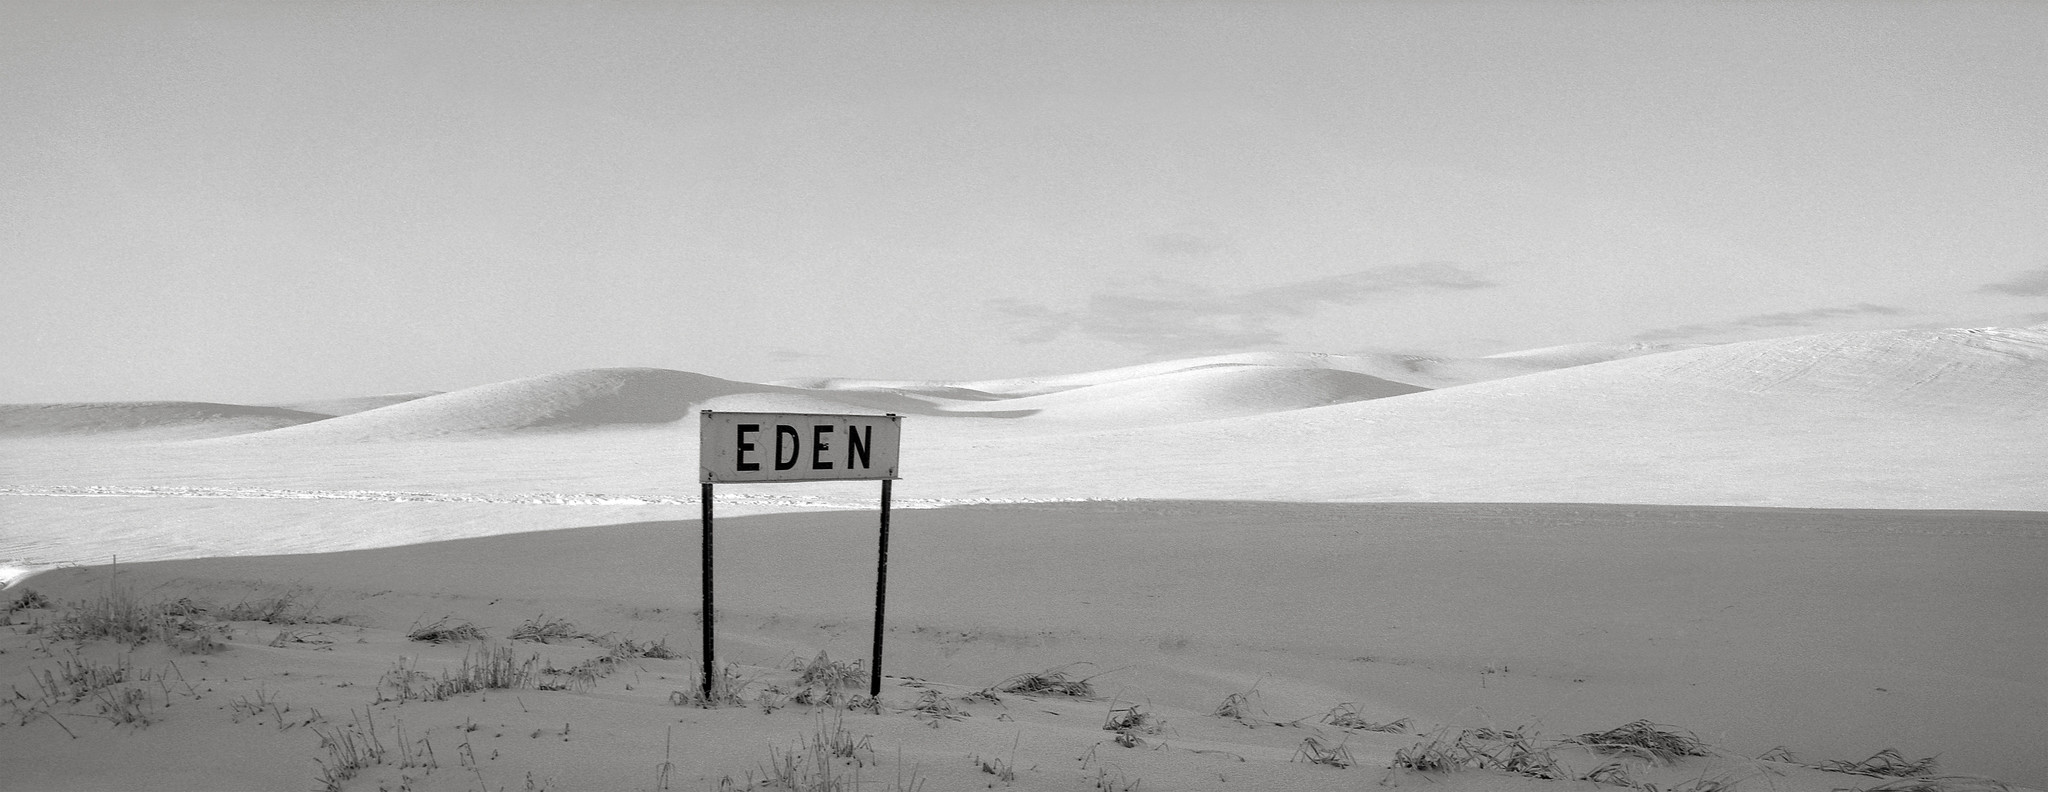 Eden, Washington | by austin granger